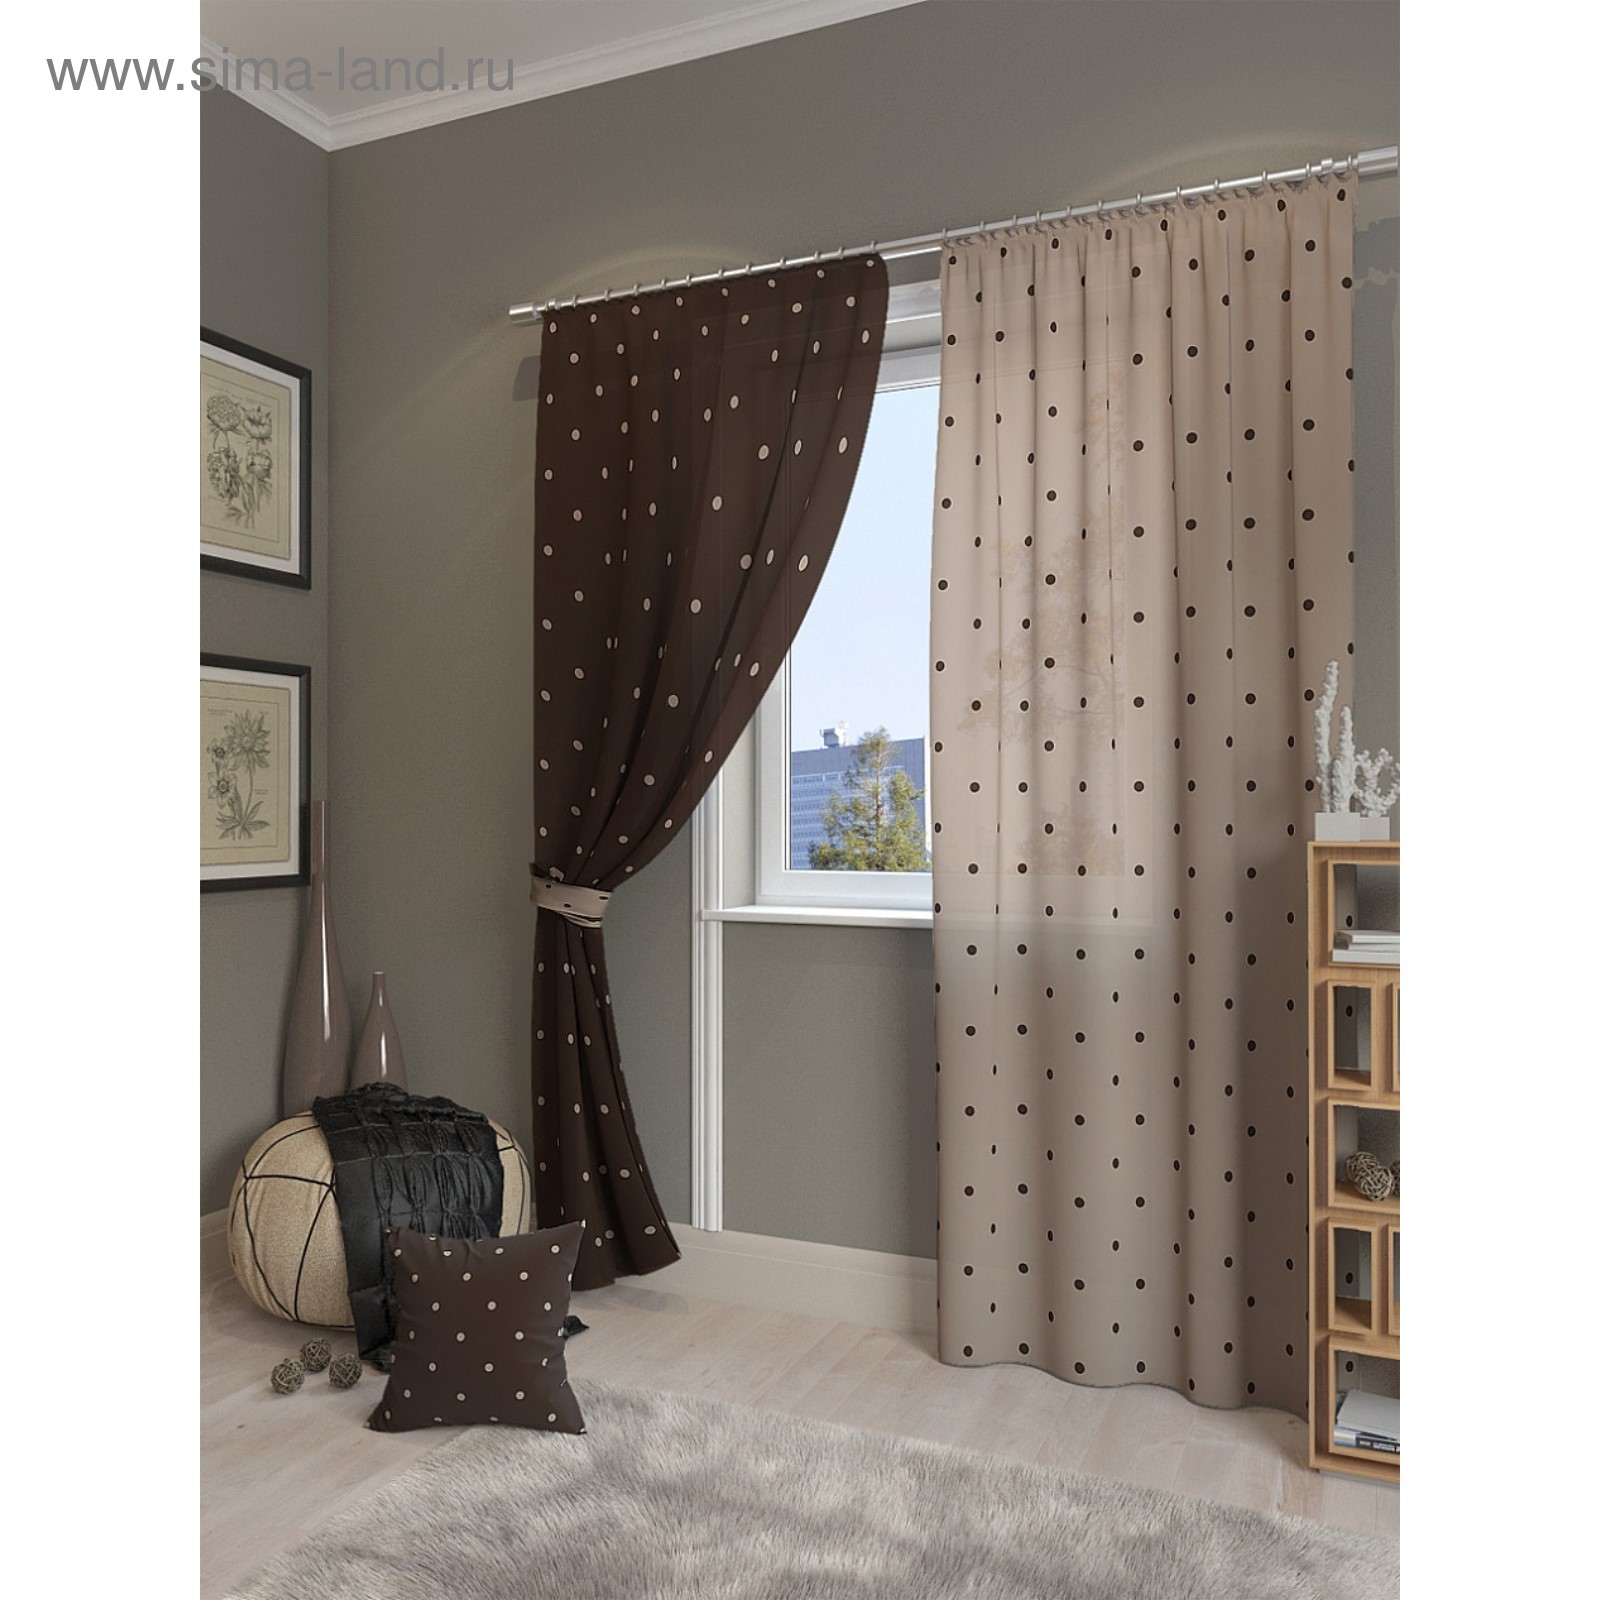  шторы в интерьере спальни: Бежевый цвет для штор и интерьера .